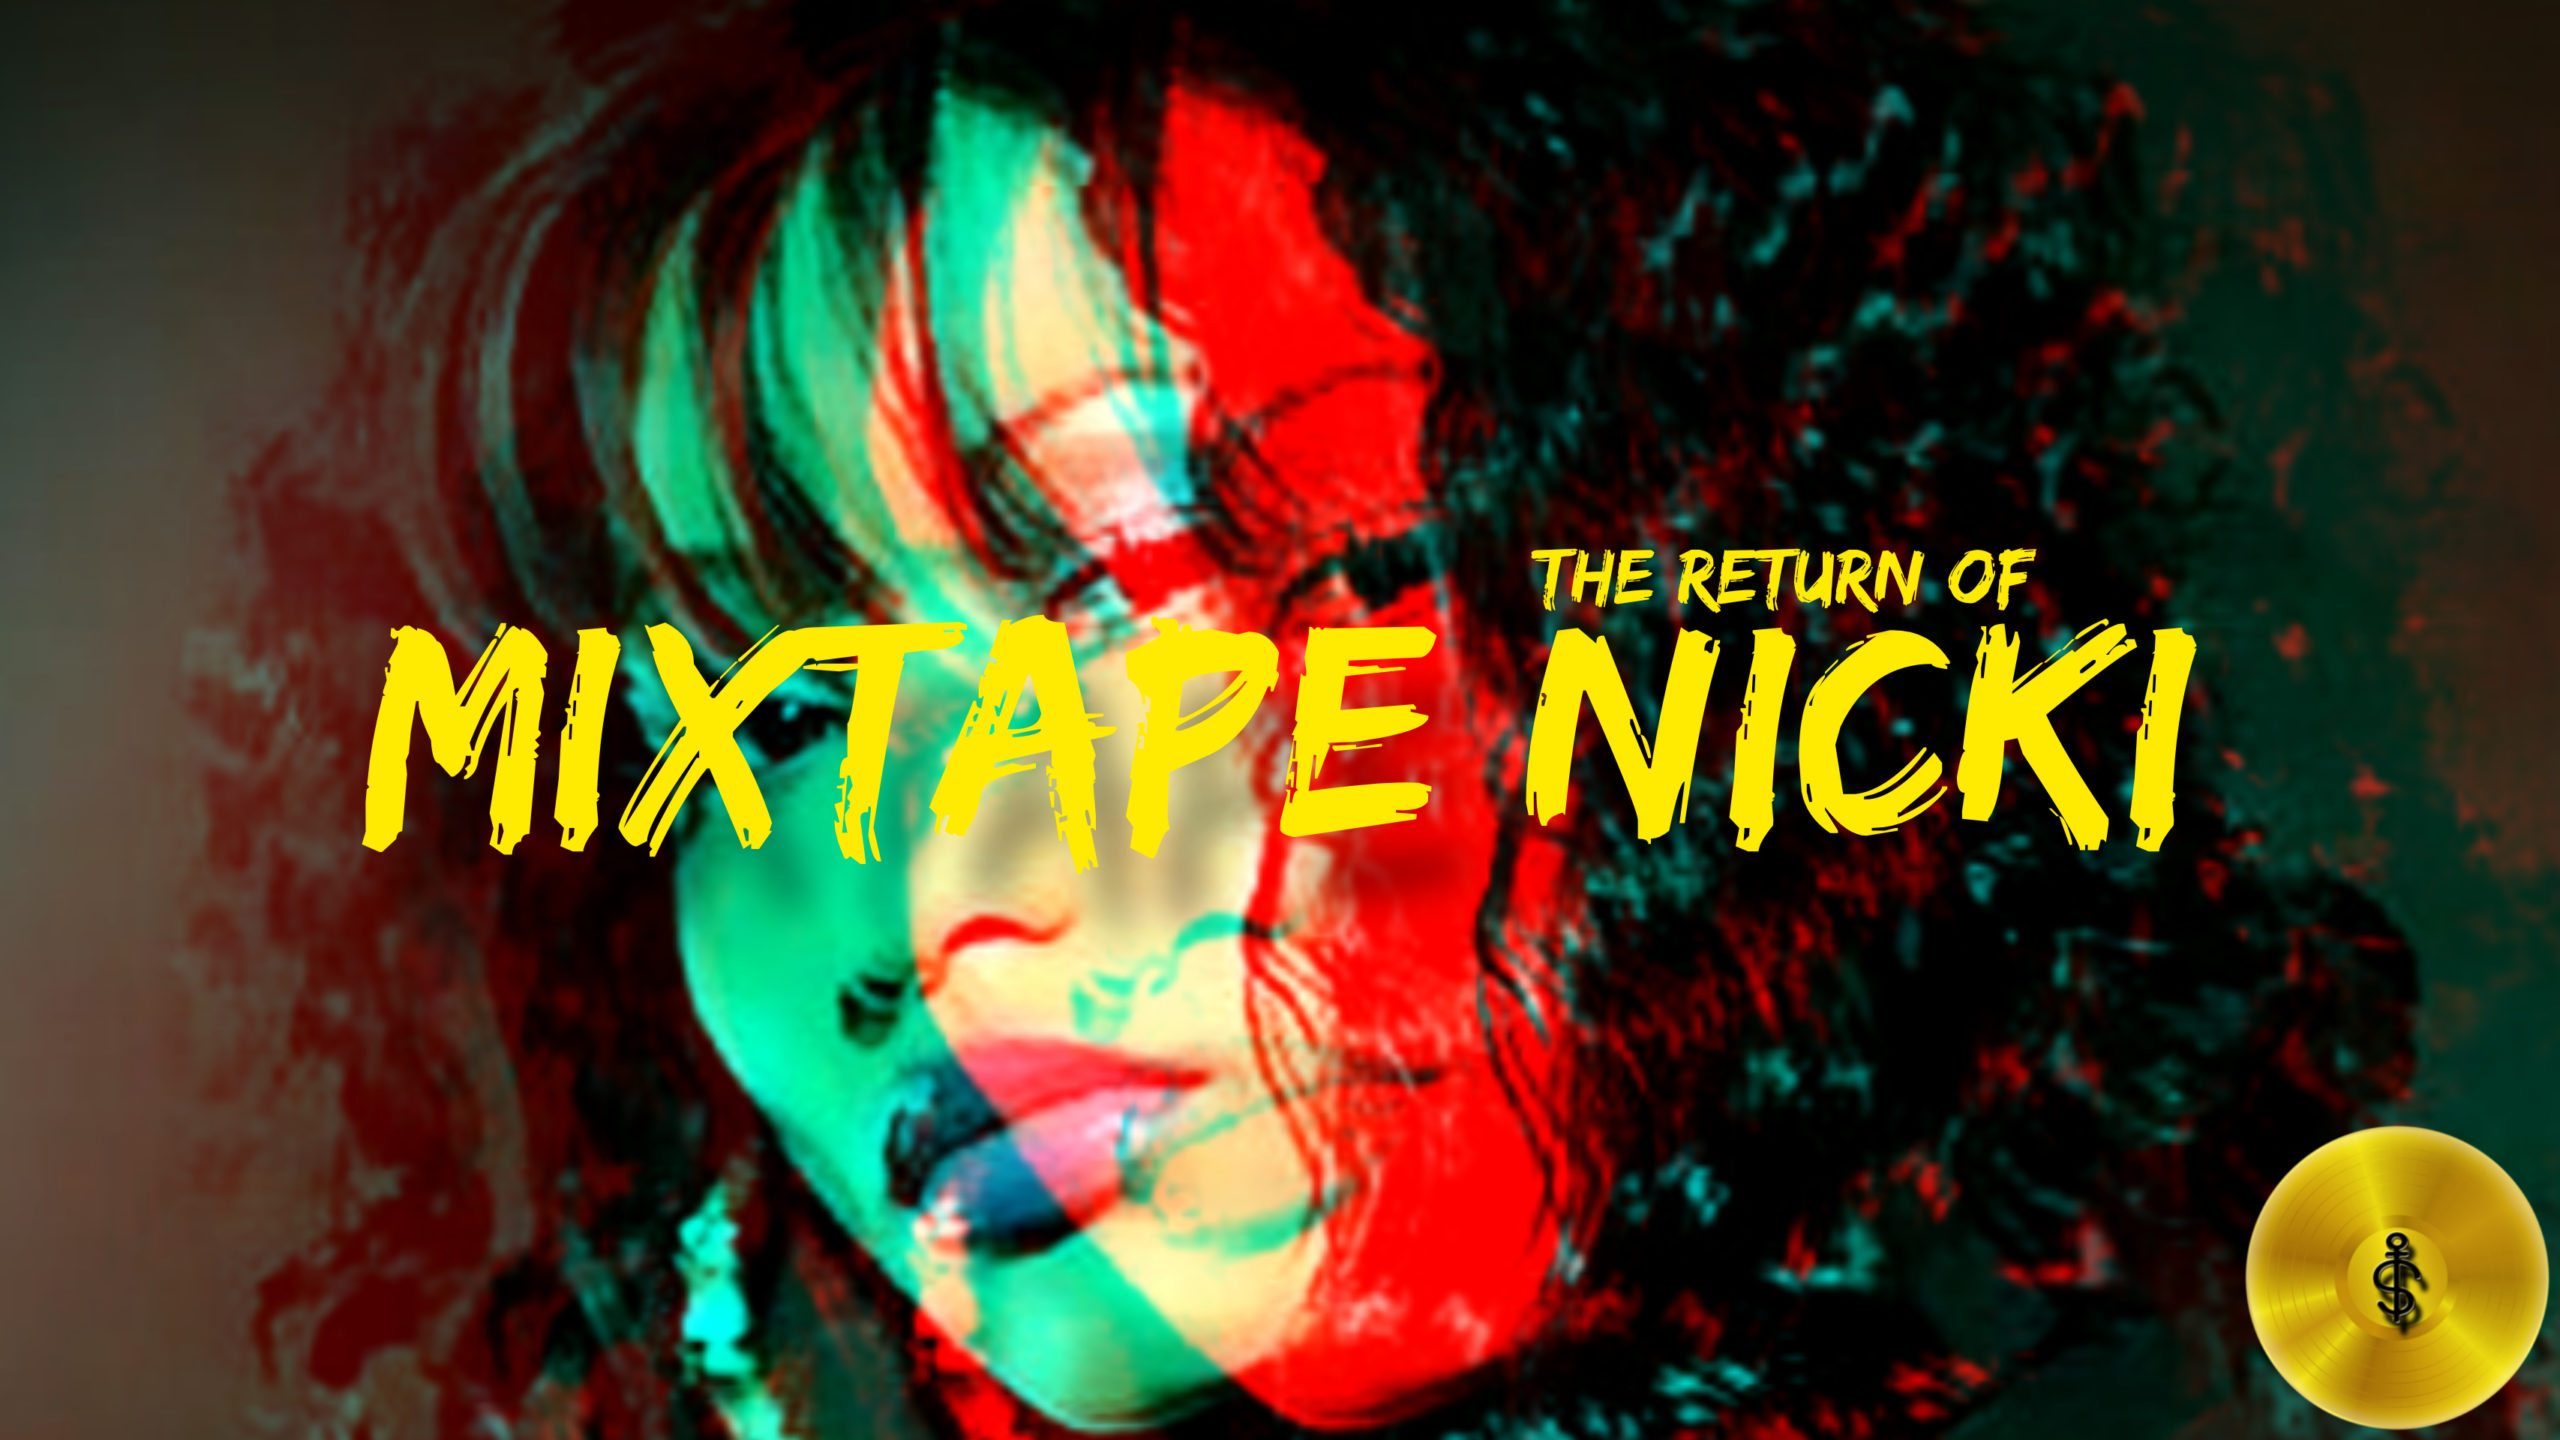 Nicki Minaj: “Mixtape Nicki” returns in 2022